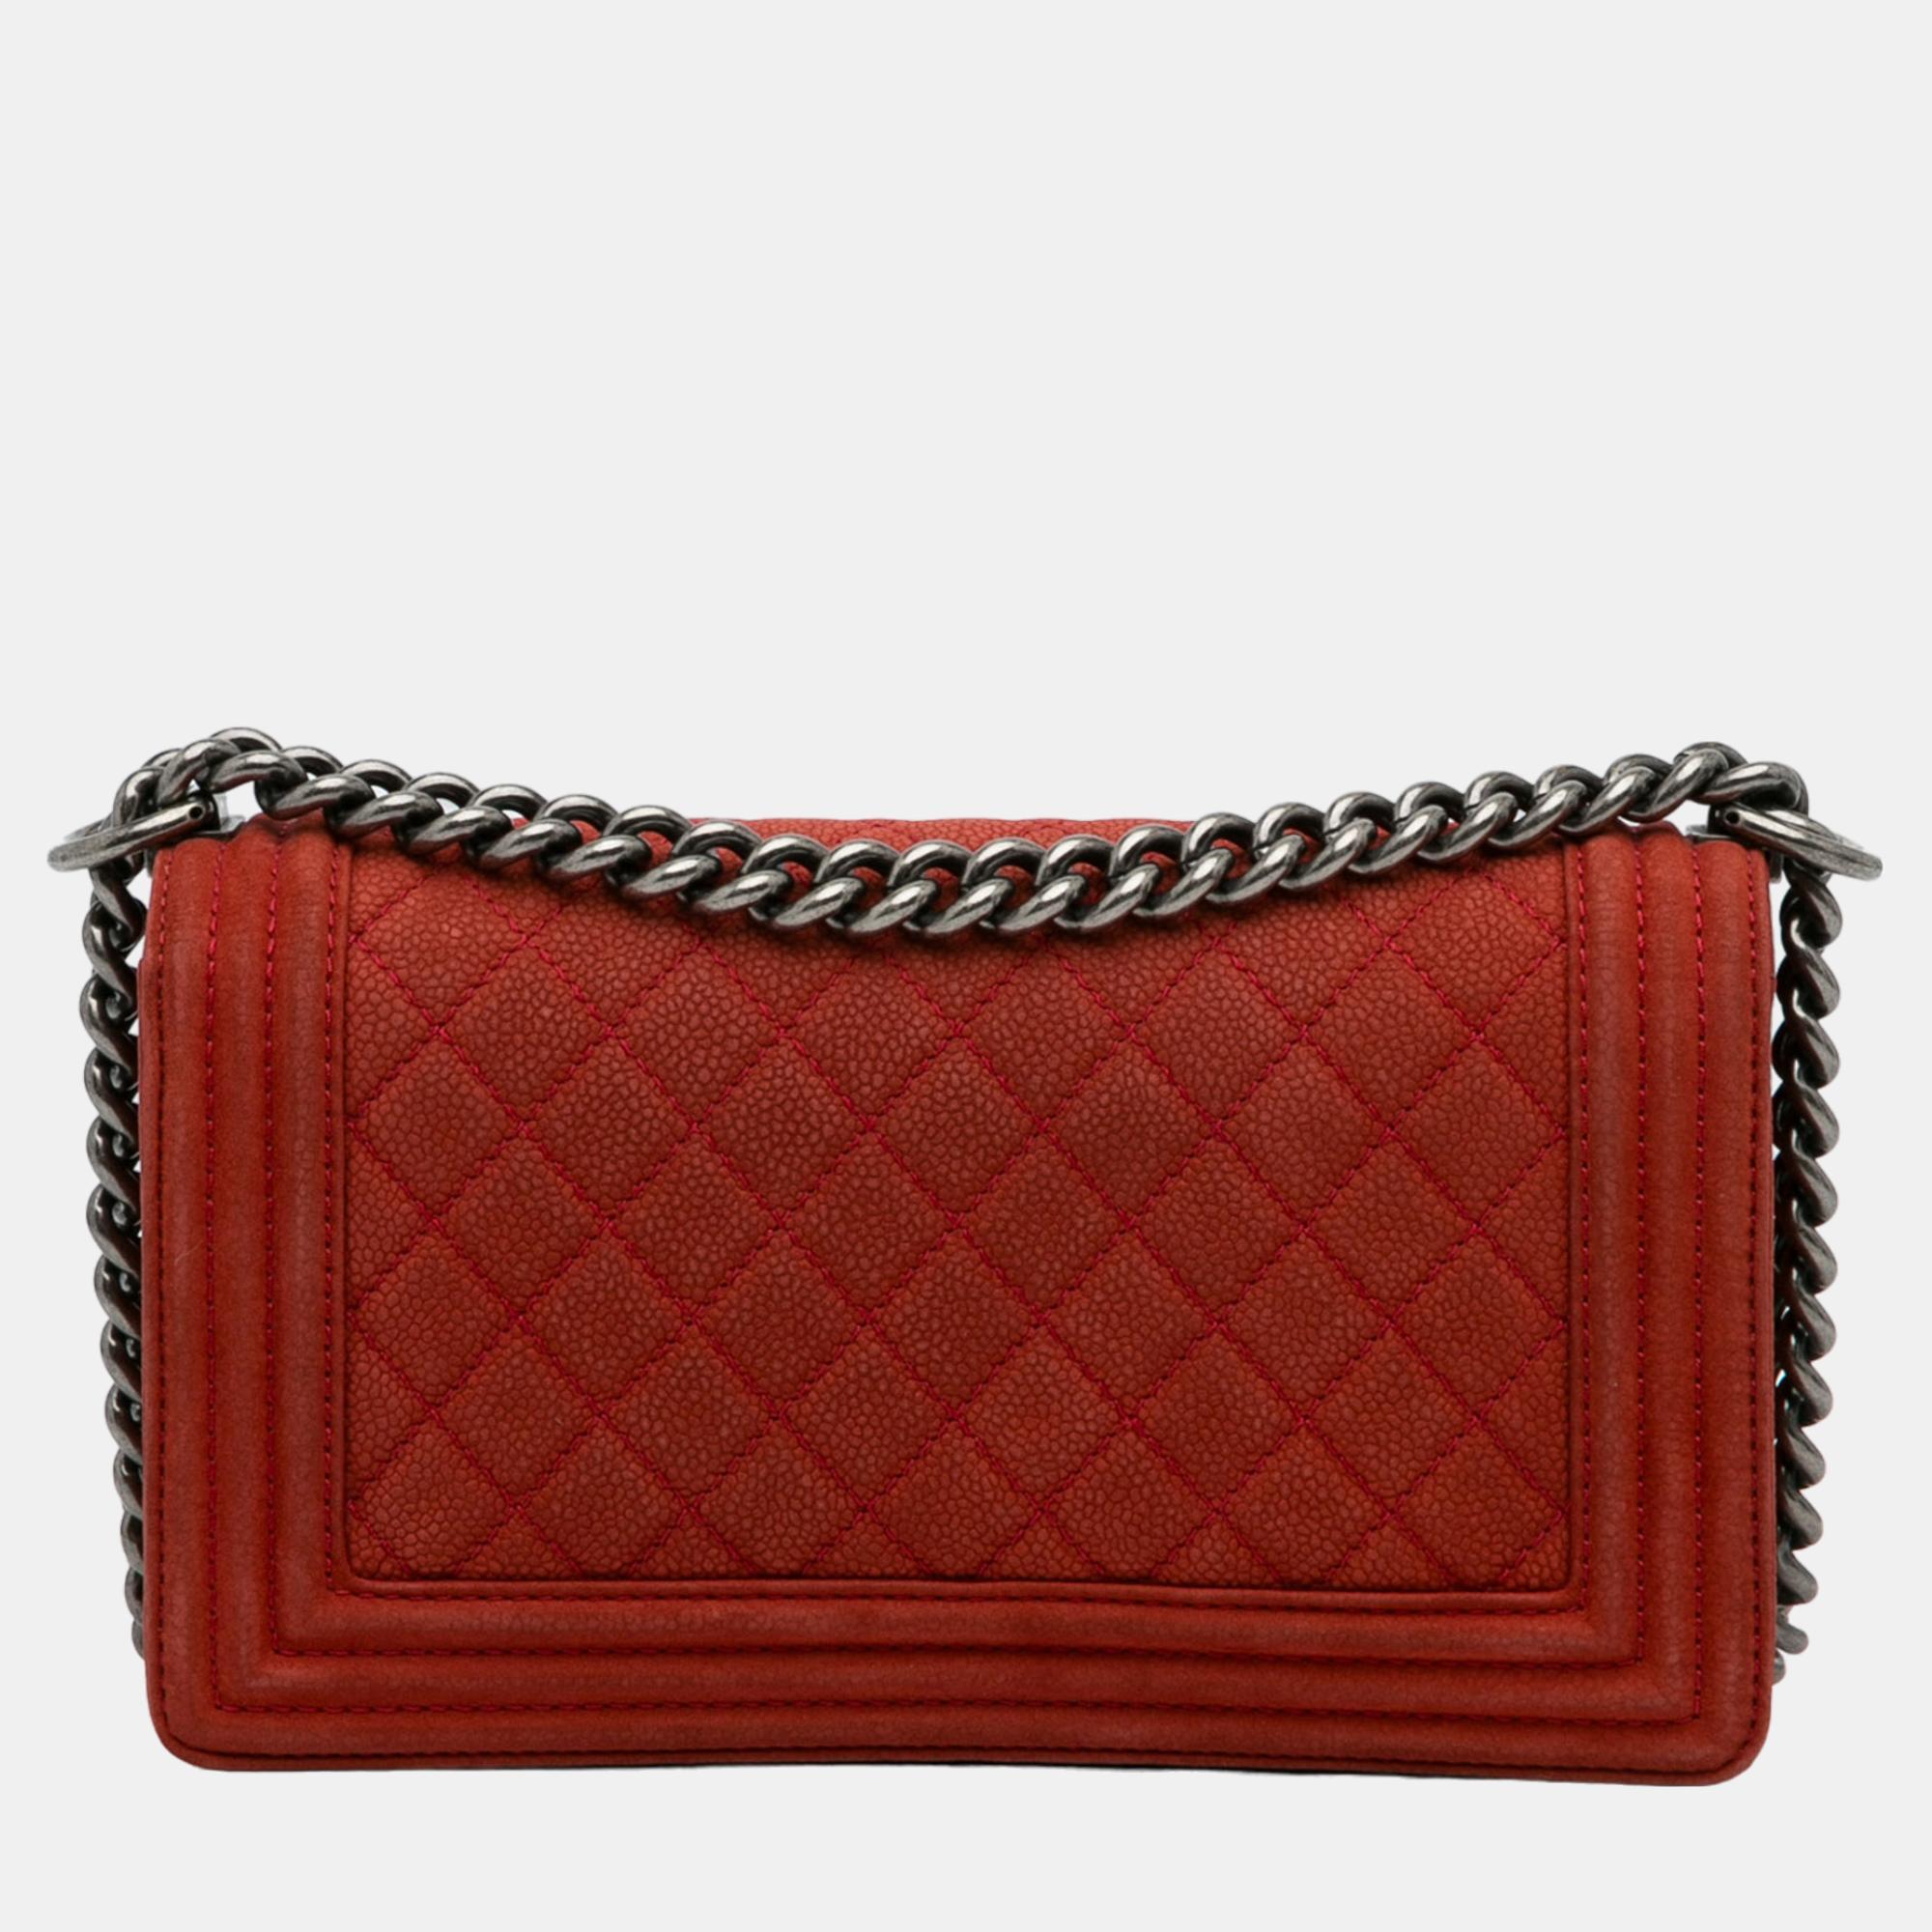 Chanel Red Medium Caviar Boy Flap Bag